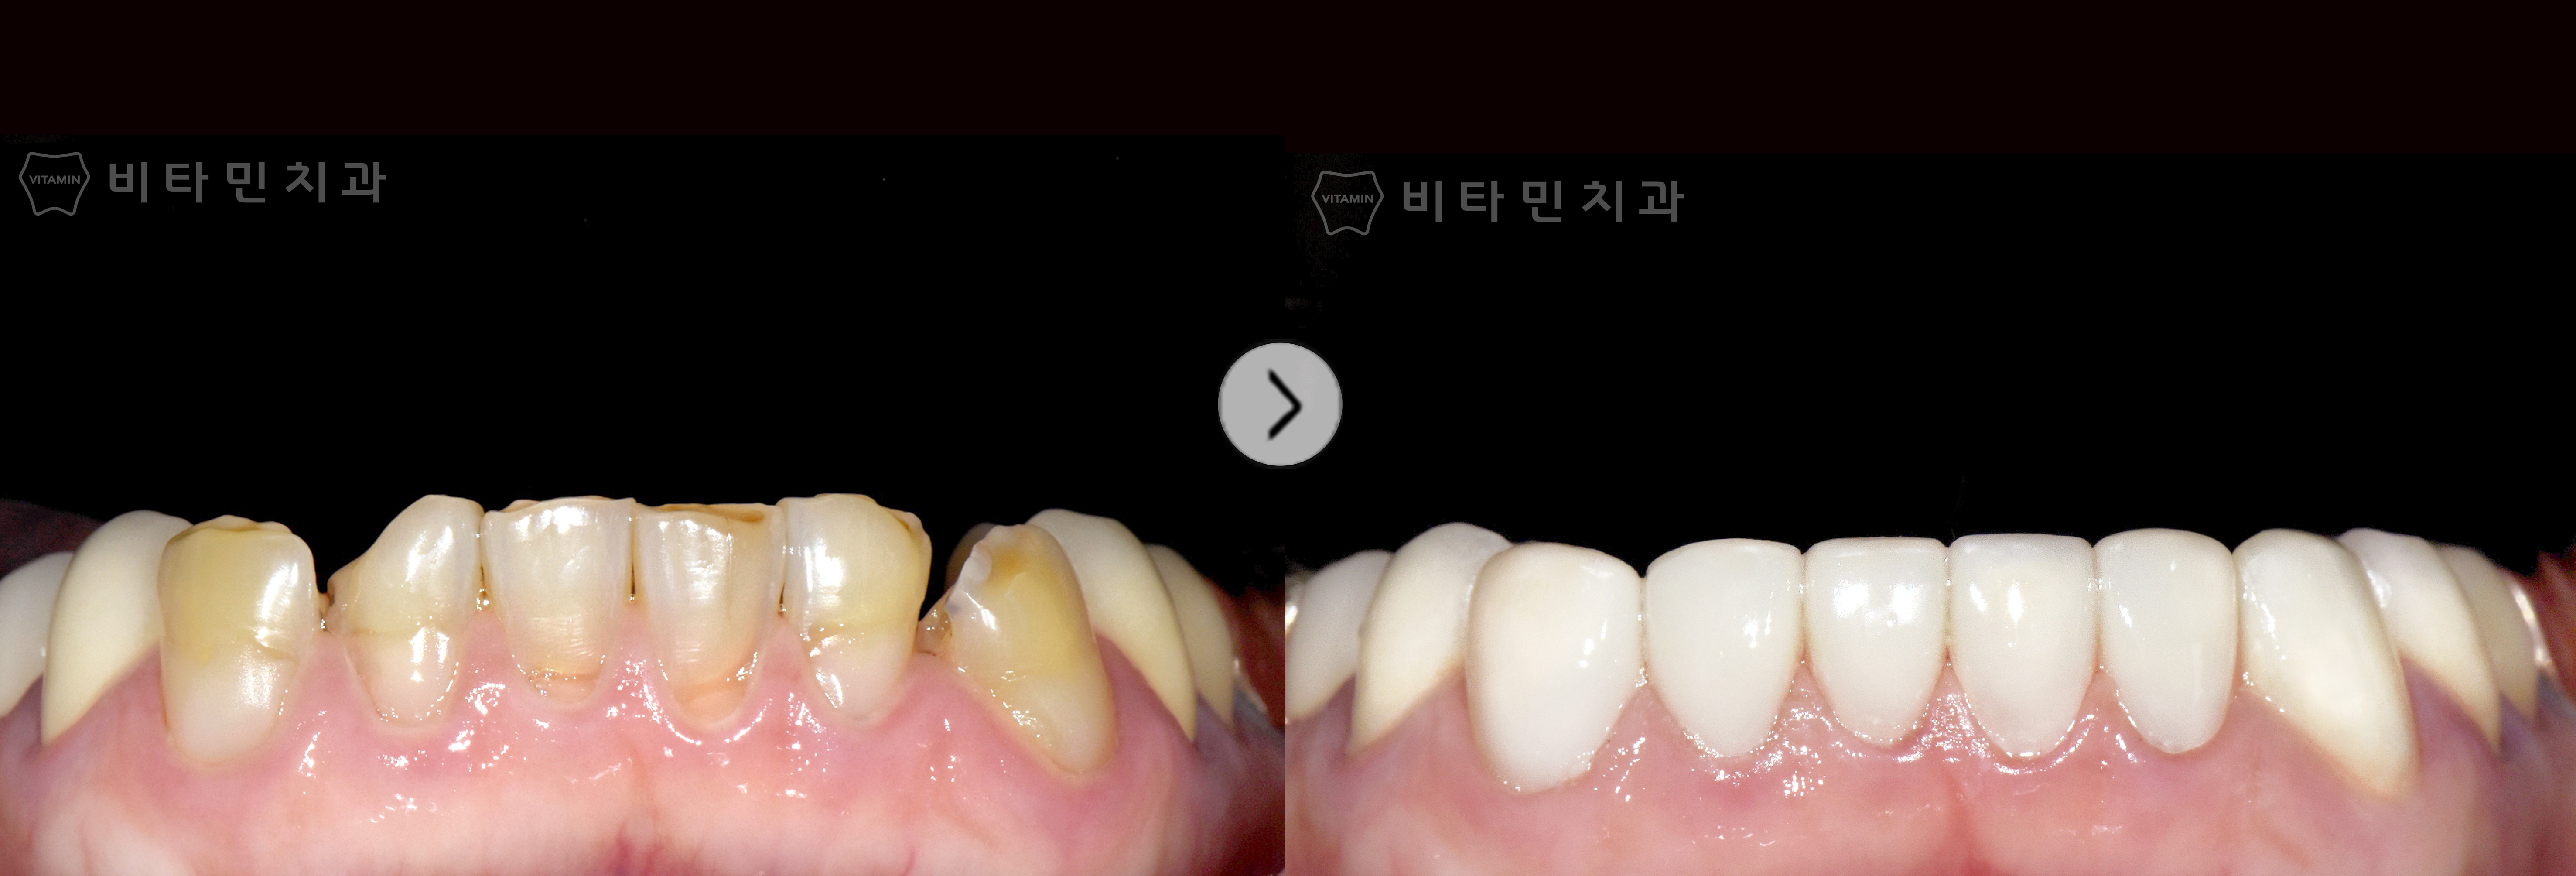 전체적으로 심한 손상 및 마모된 치아 자연스러운 잇몸라인과 치아로 복원